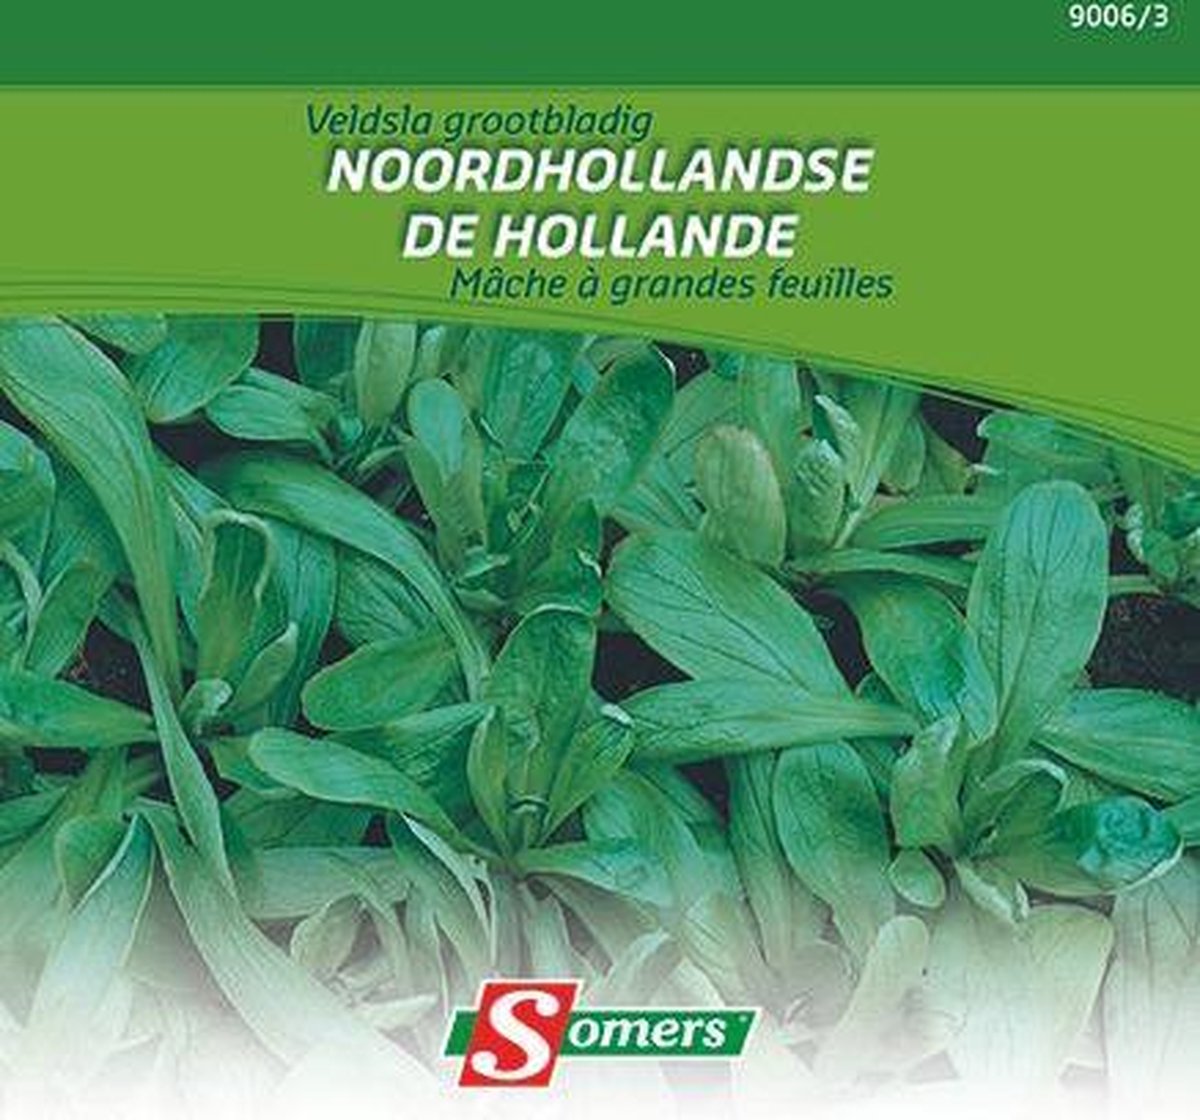 Somers zaden - Veldsla Grootbladig Noordhollandse 20 gram